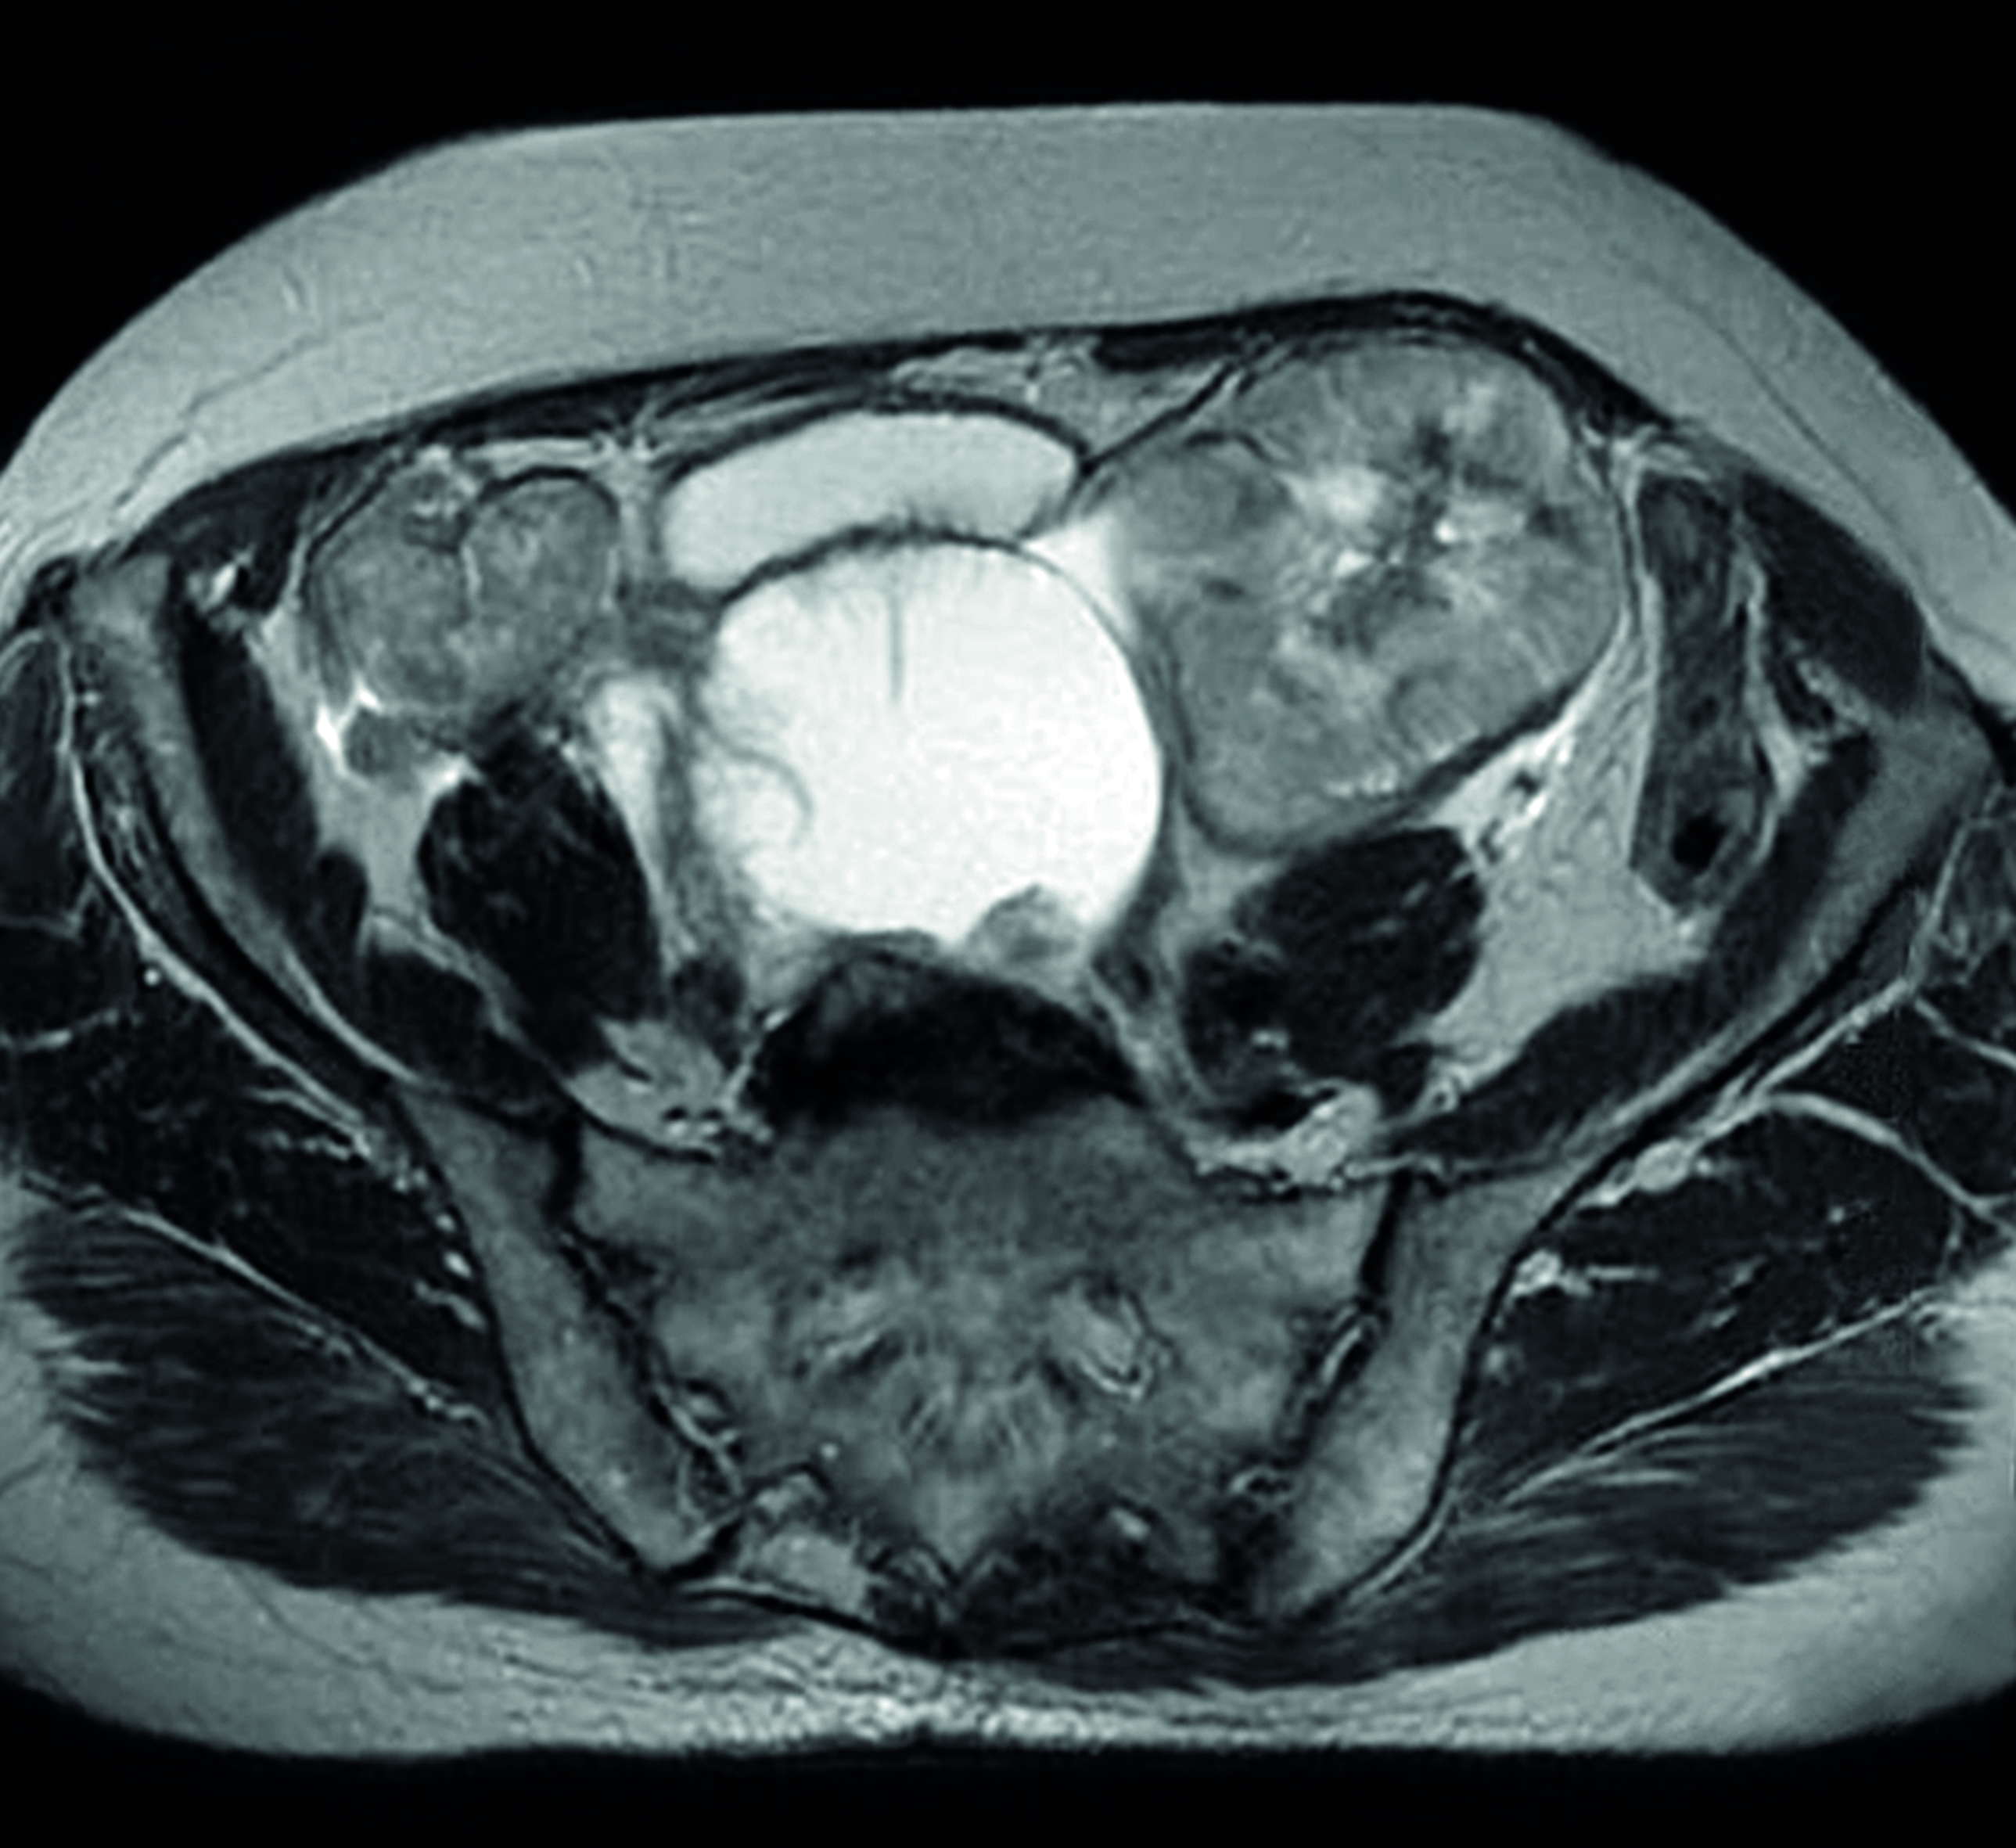 c0345656 bilateral ovarian cancer, mri scan spl